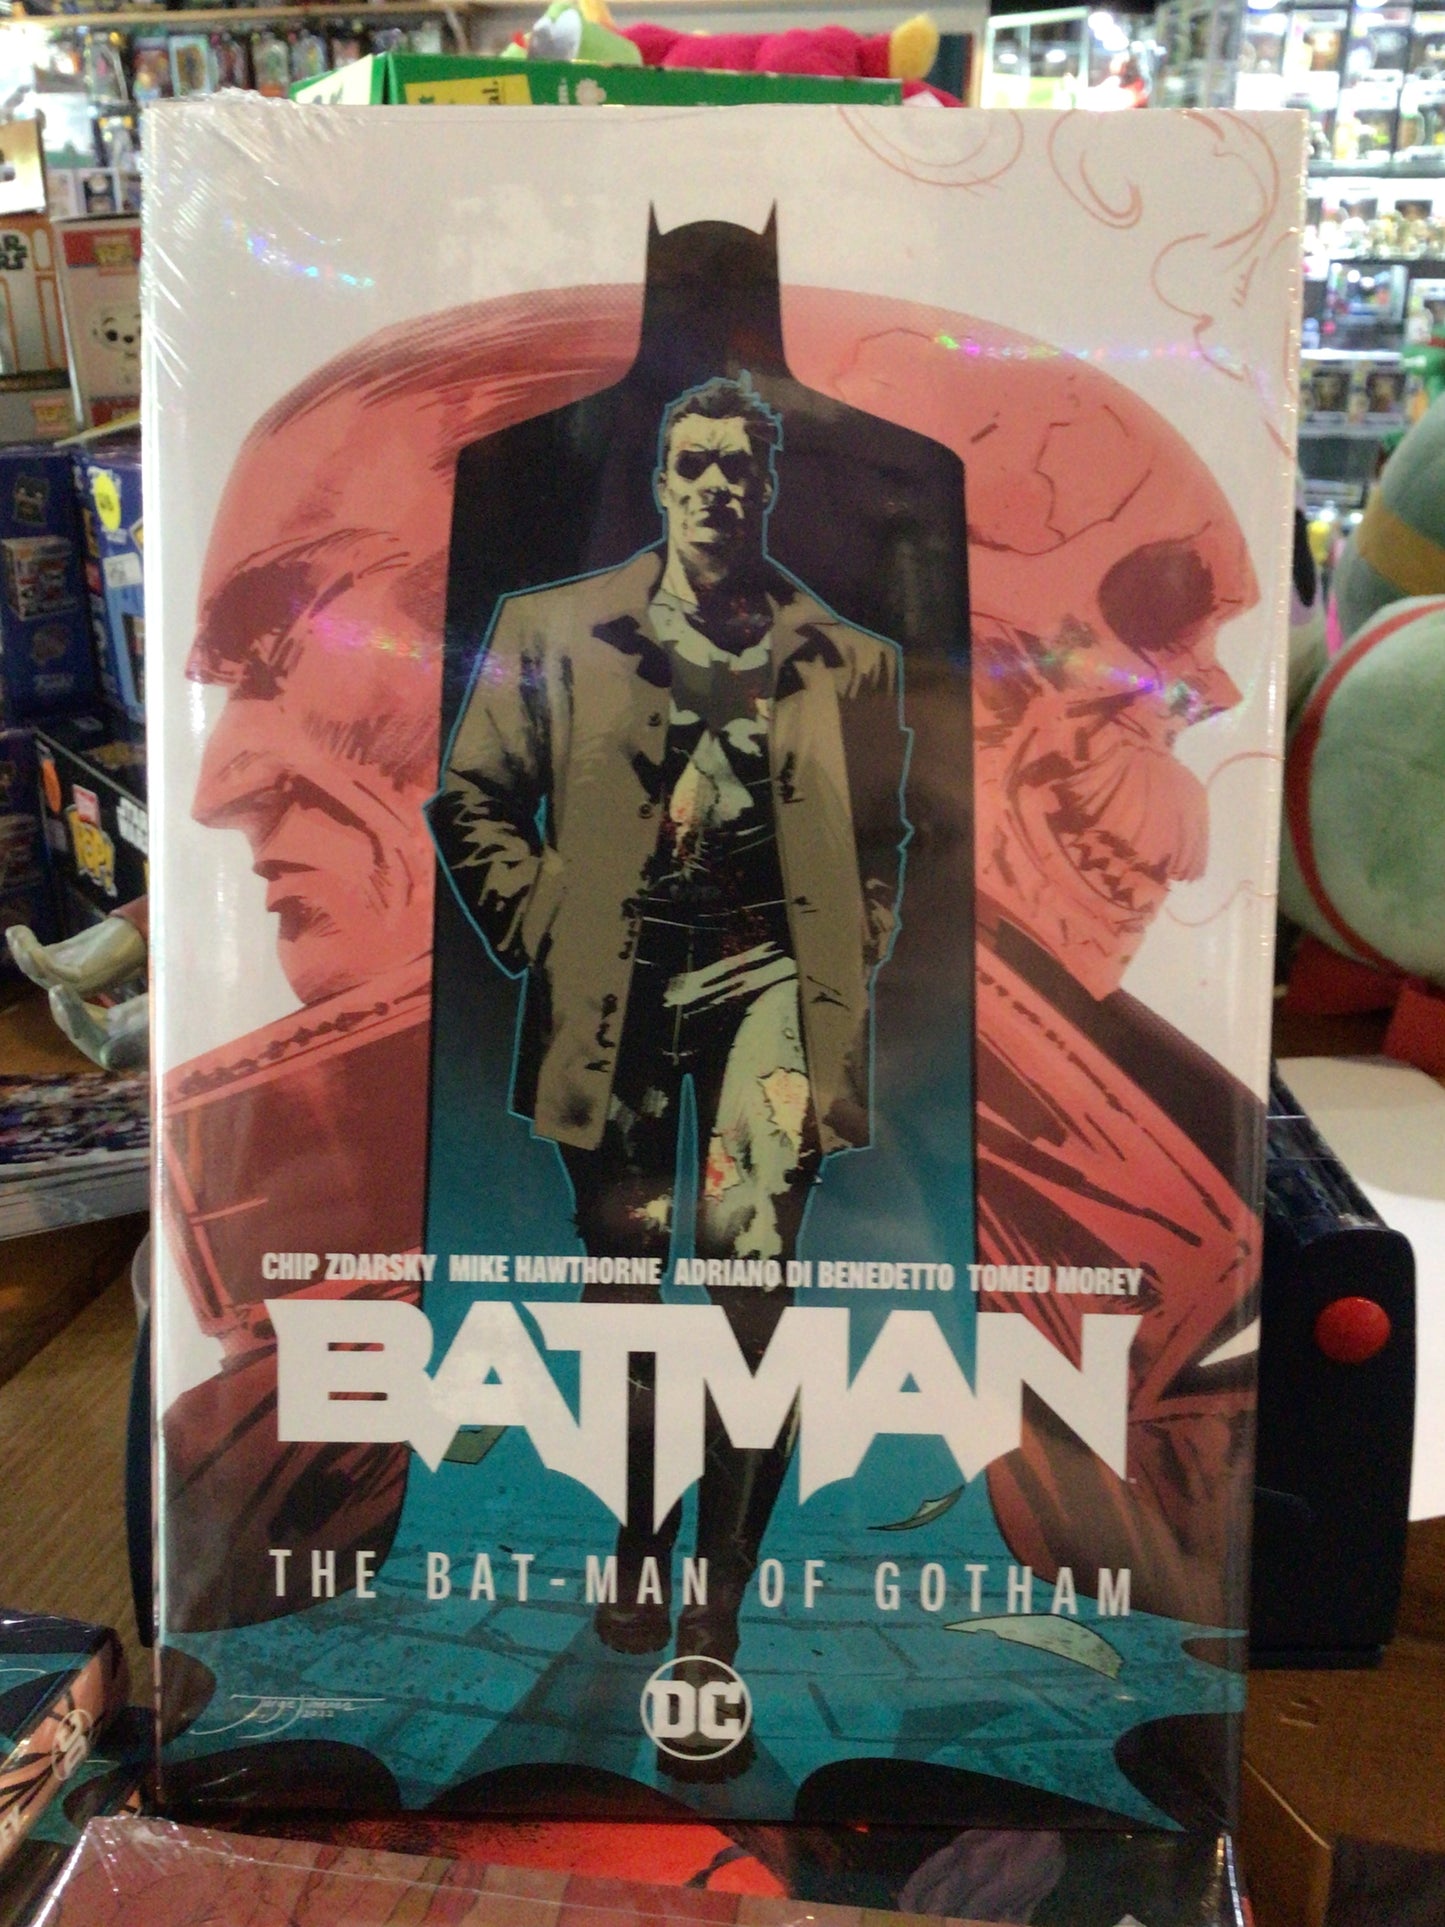 Batman: Detective Comics vol 2. The Bat-man of Gotham by DC Comics